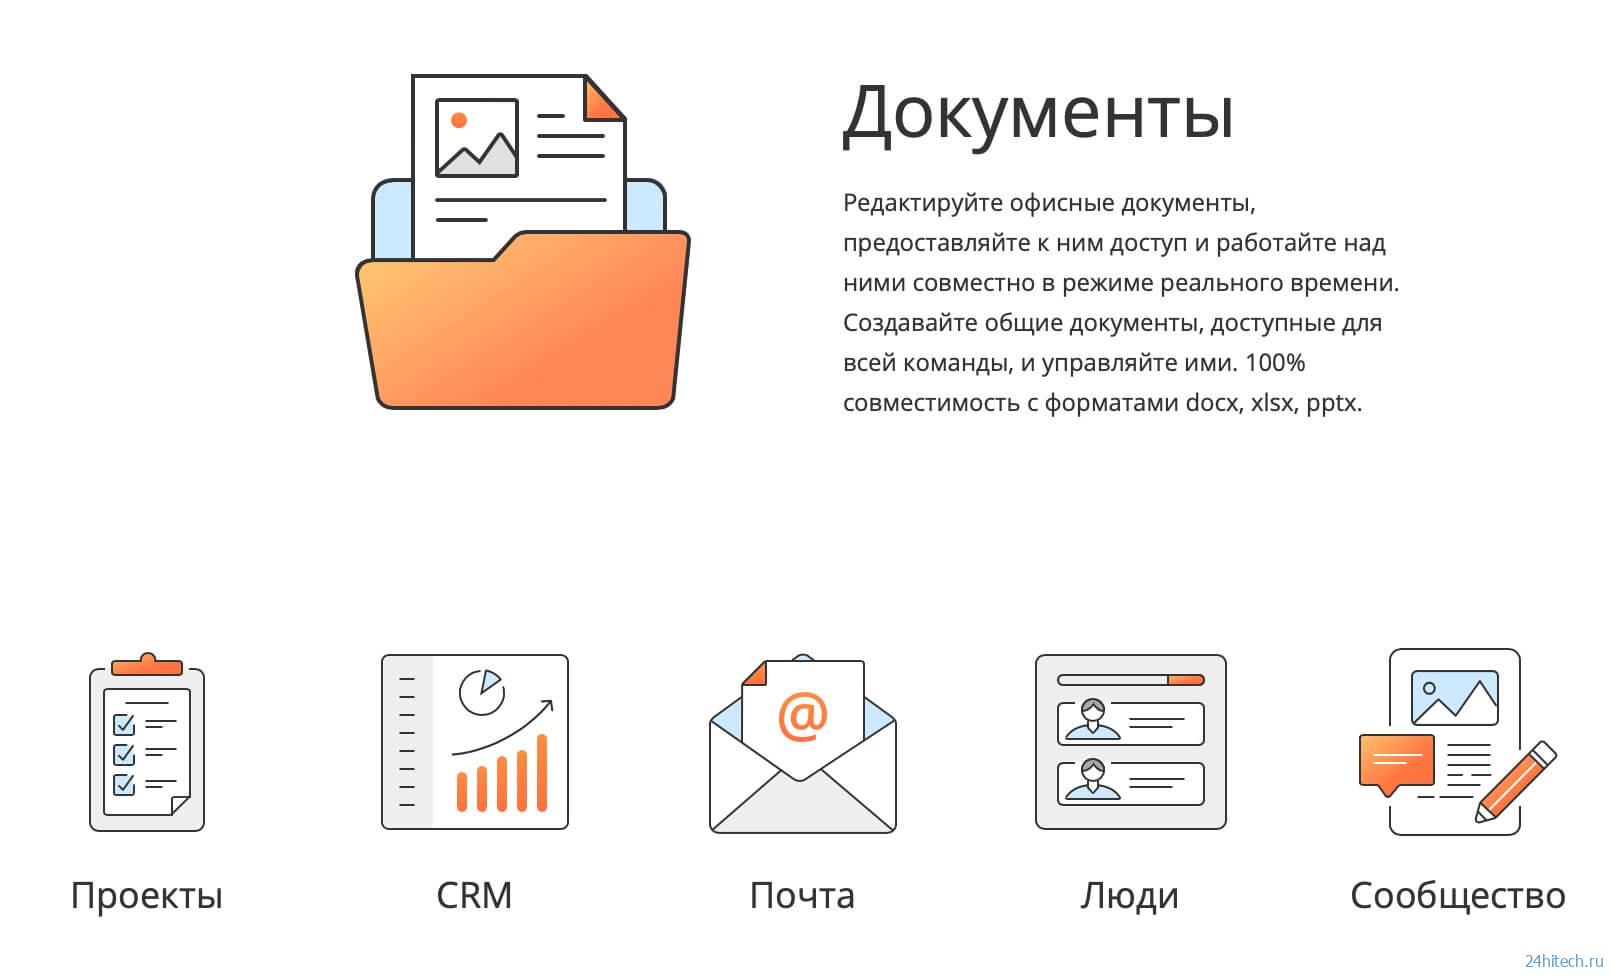 Как работать с текстом и таблицами в России, когда многое заблокировано